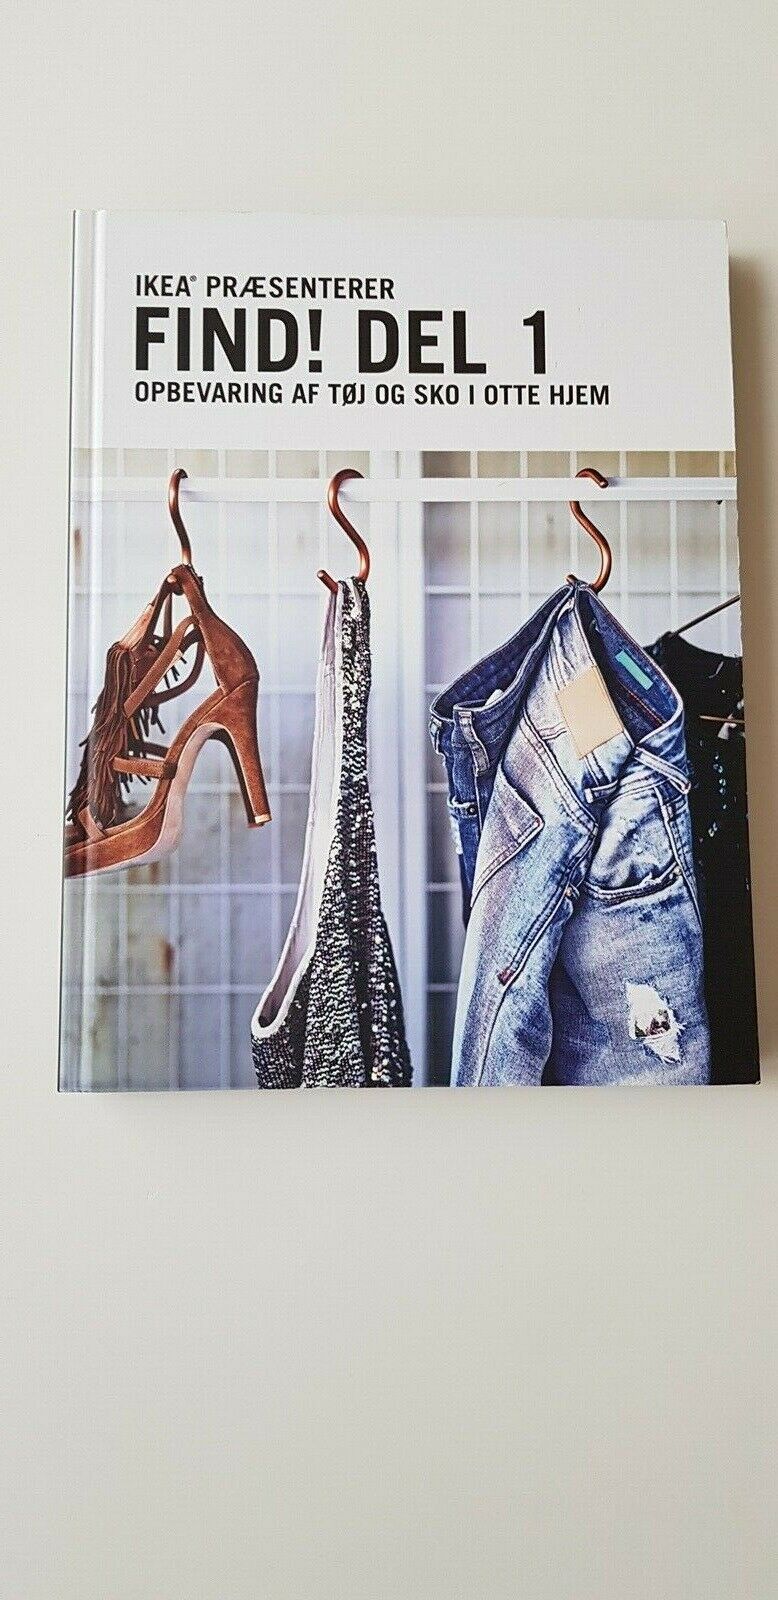 Cirkel Perth Blackborough forsætlig Find! Del 1 Opbevaring af tøj og sko i otte hjem, Ikea, anden bog – dba.dk  – Køb og Salg af Nyt og Brugt